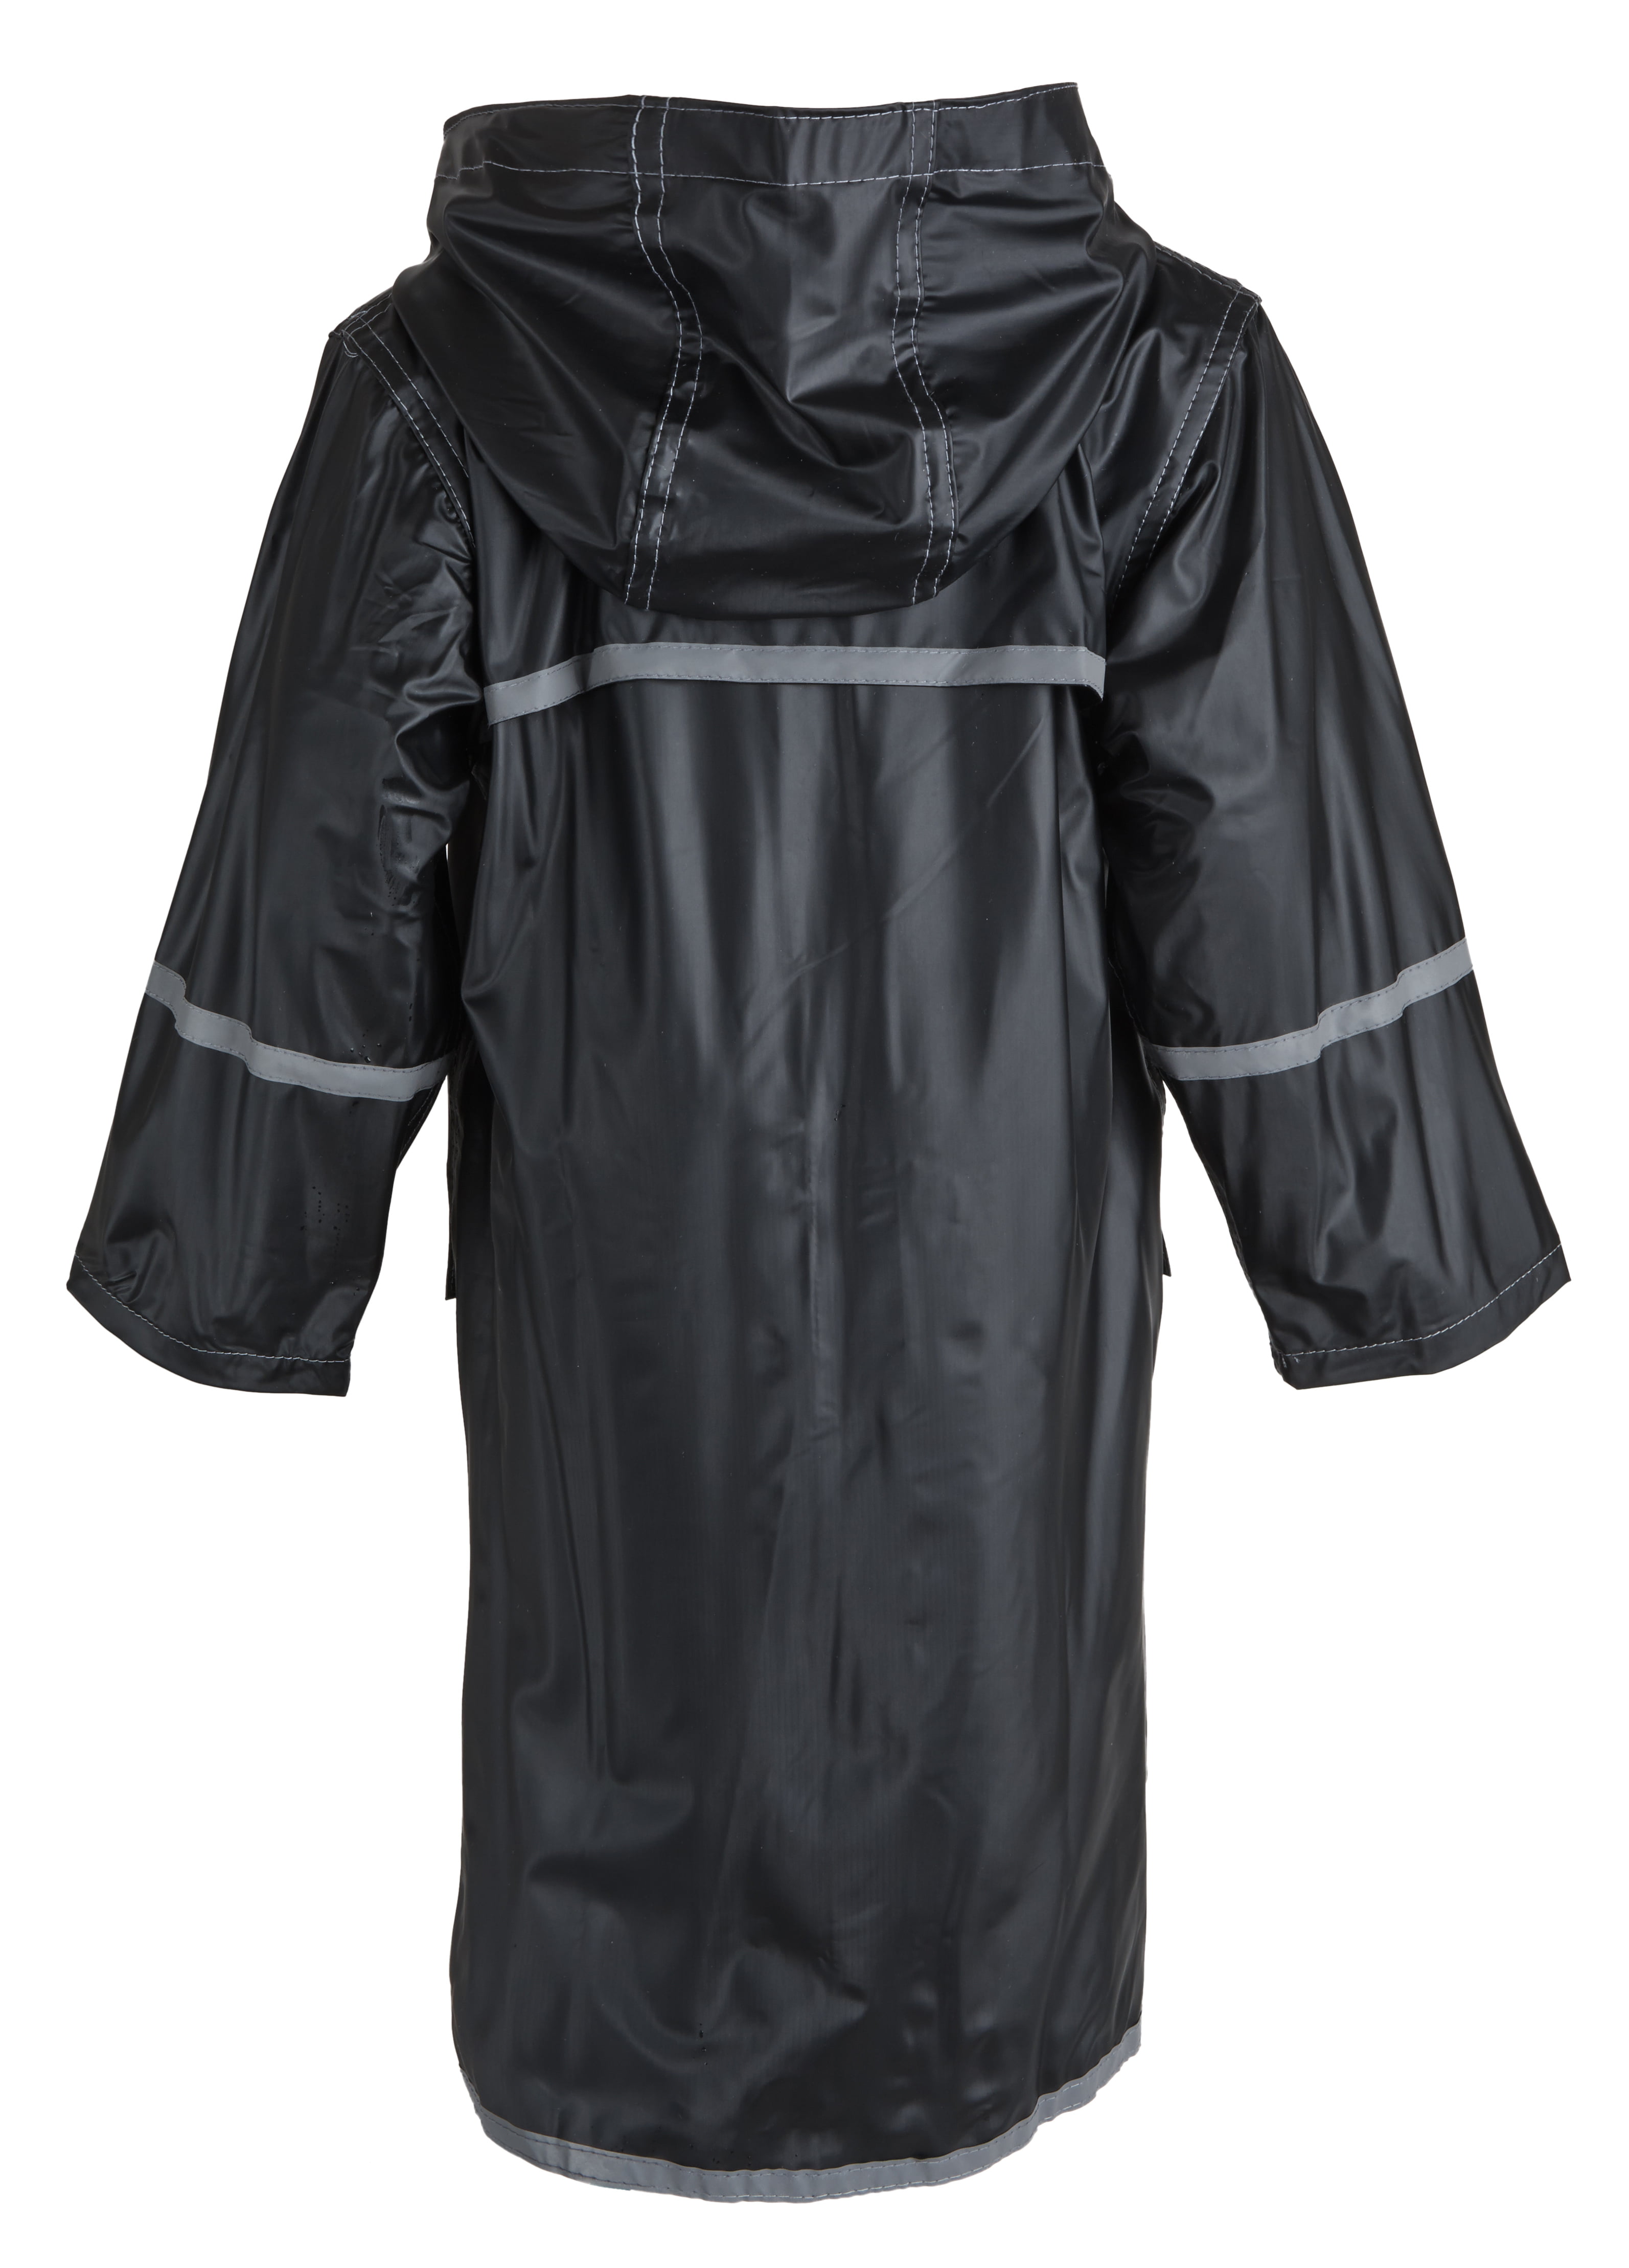 Yuncai Girls Printed Long Sleeves Hooded Raincoat Waterproof Windproof Rain Jacket 